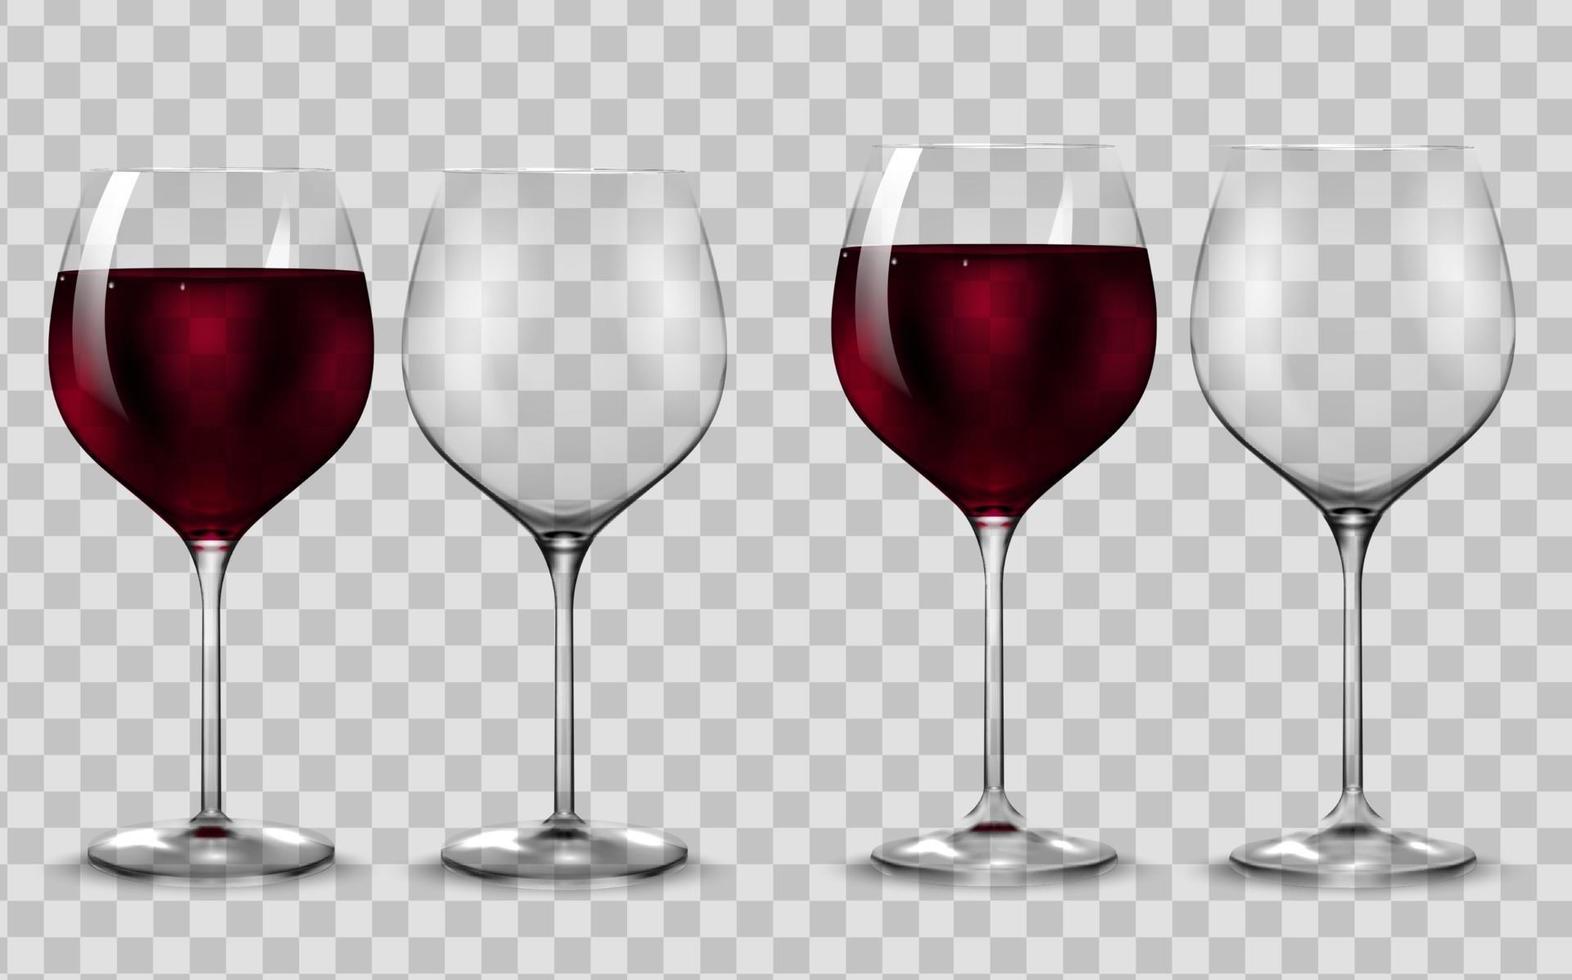 Copa de vino tinto de transparencia vacía y completa. vector. vector